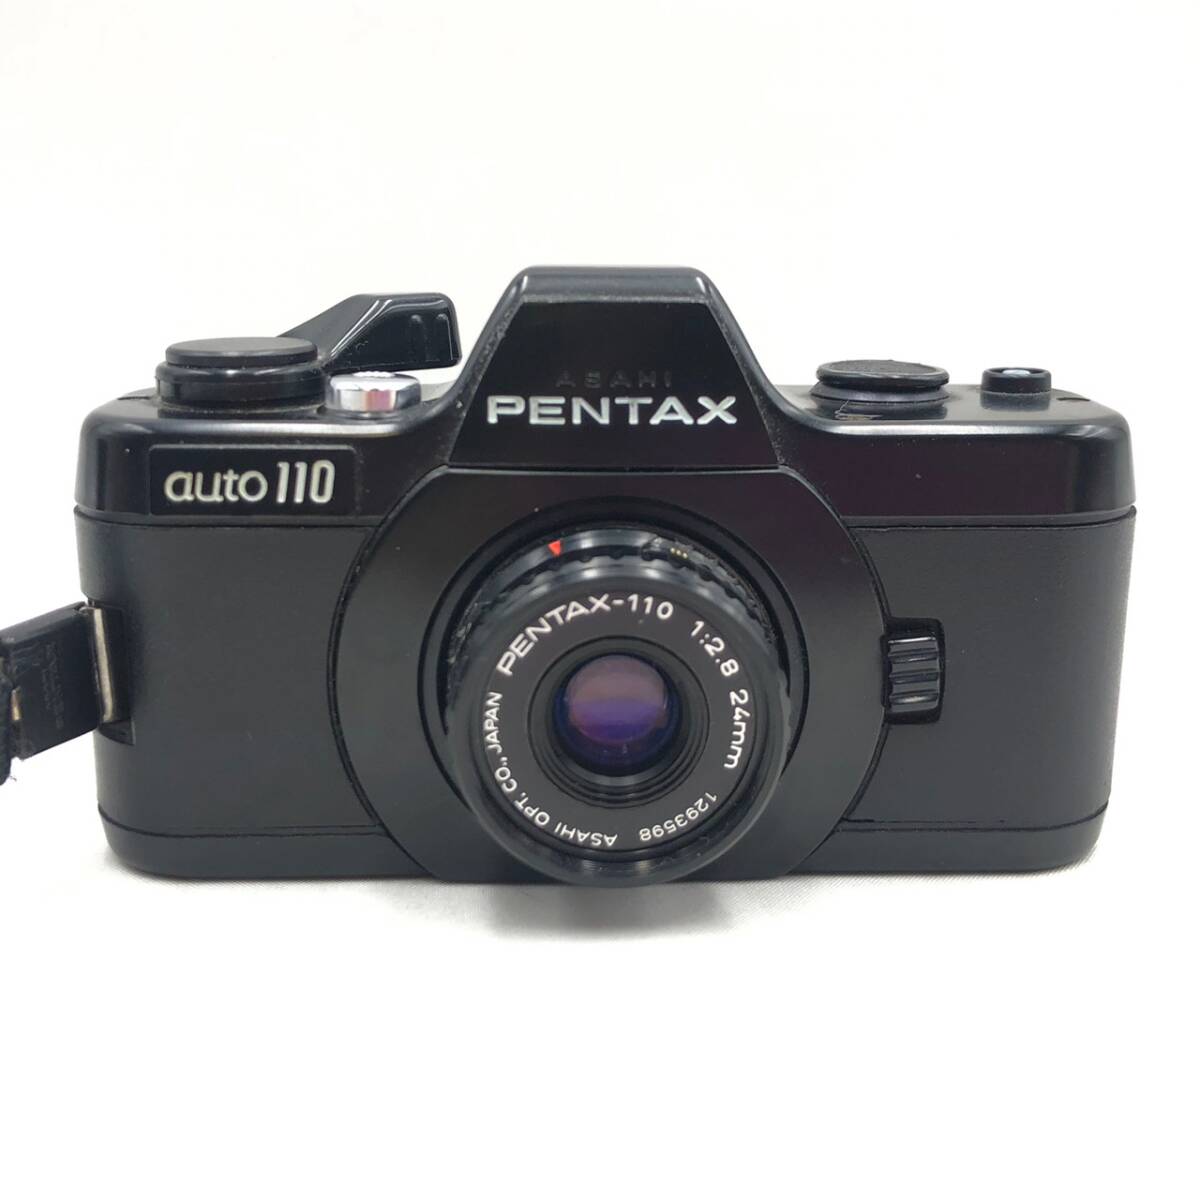 BEm043R 60 PENTAX auto 110 レンズ まとめ 1:2.8 70mm 24mm ミニ 小型 フィルムカメラ 一眼レフ コンパクト レトロ アンティーク_画像2